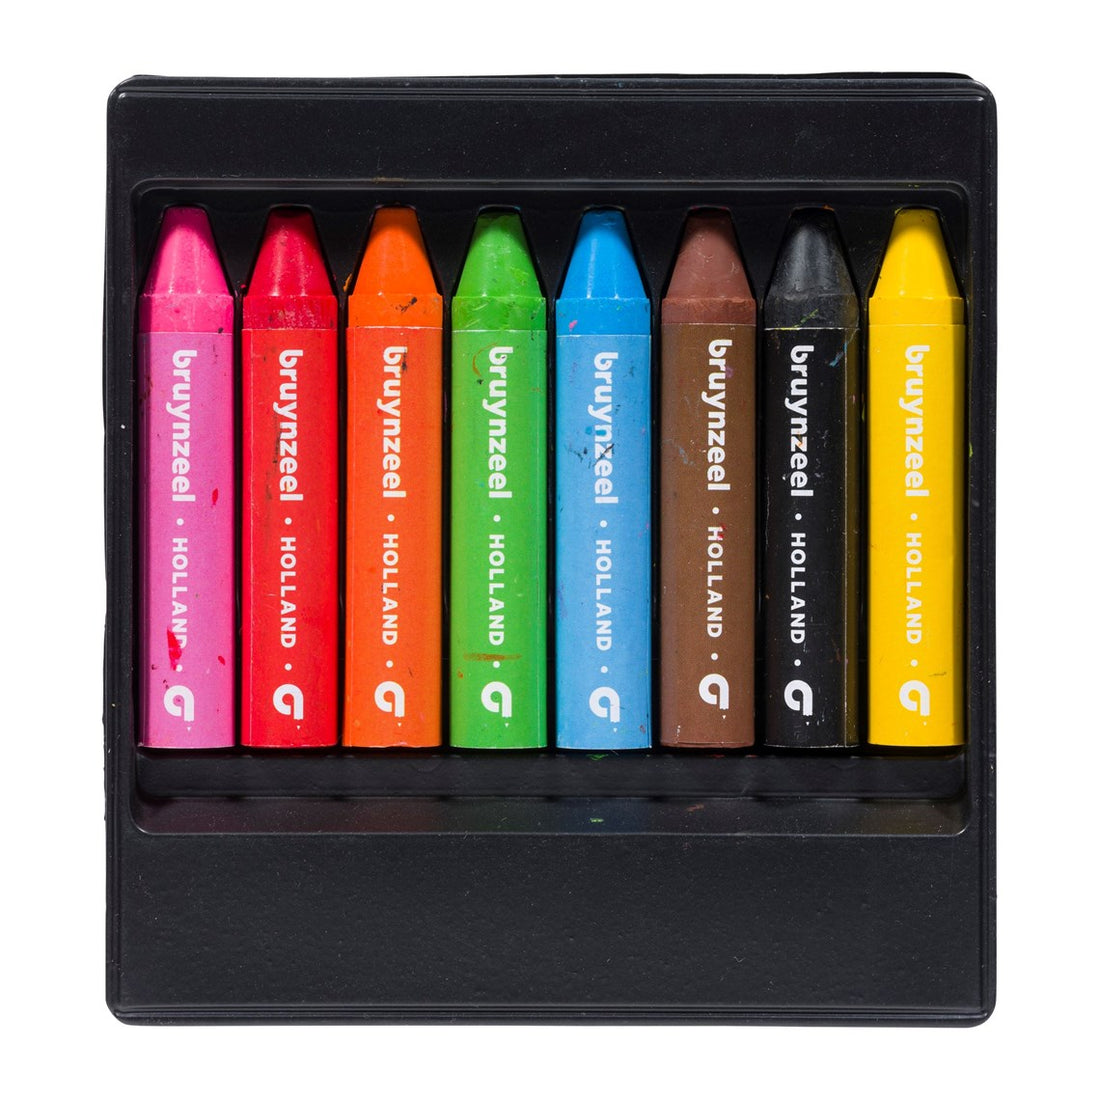 Wax crayons set of 8